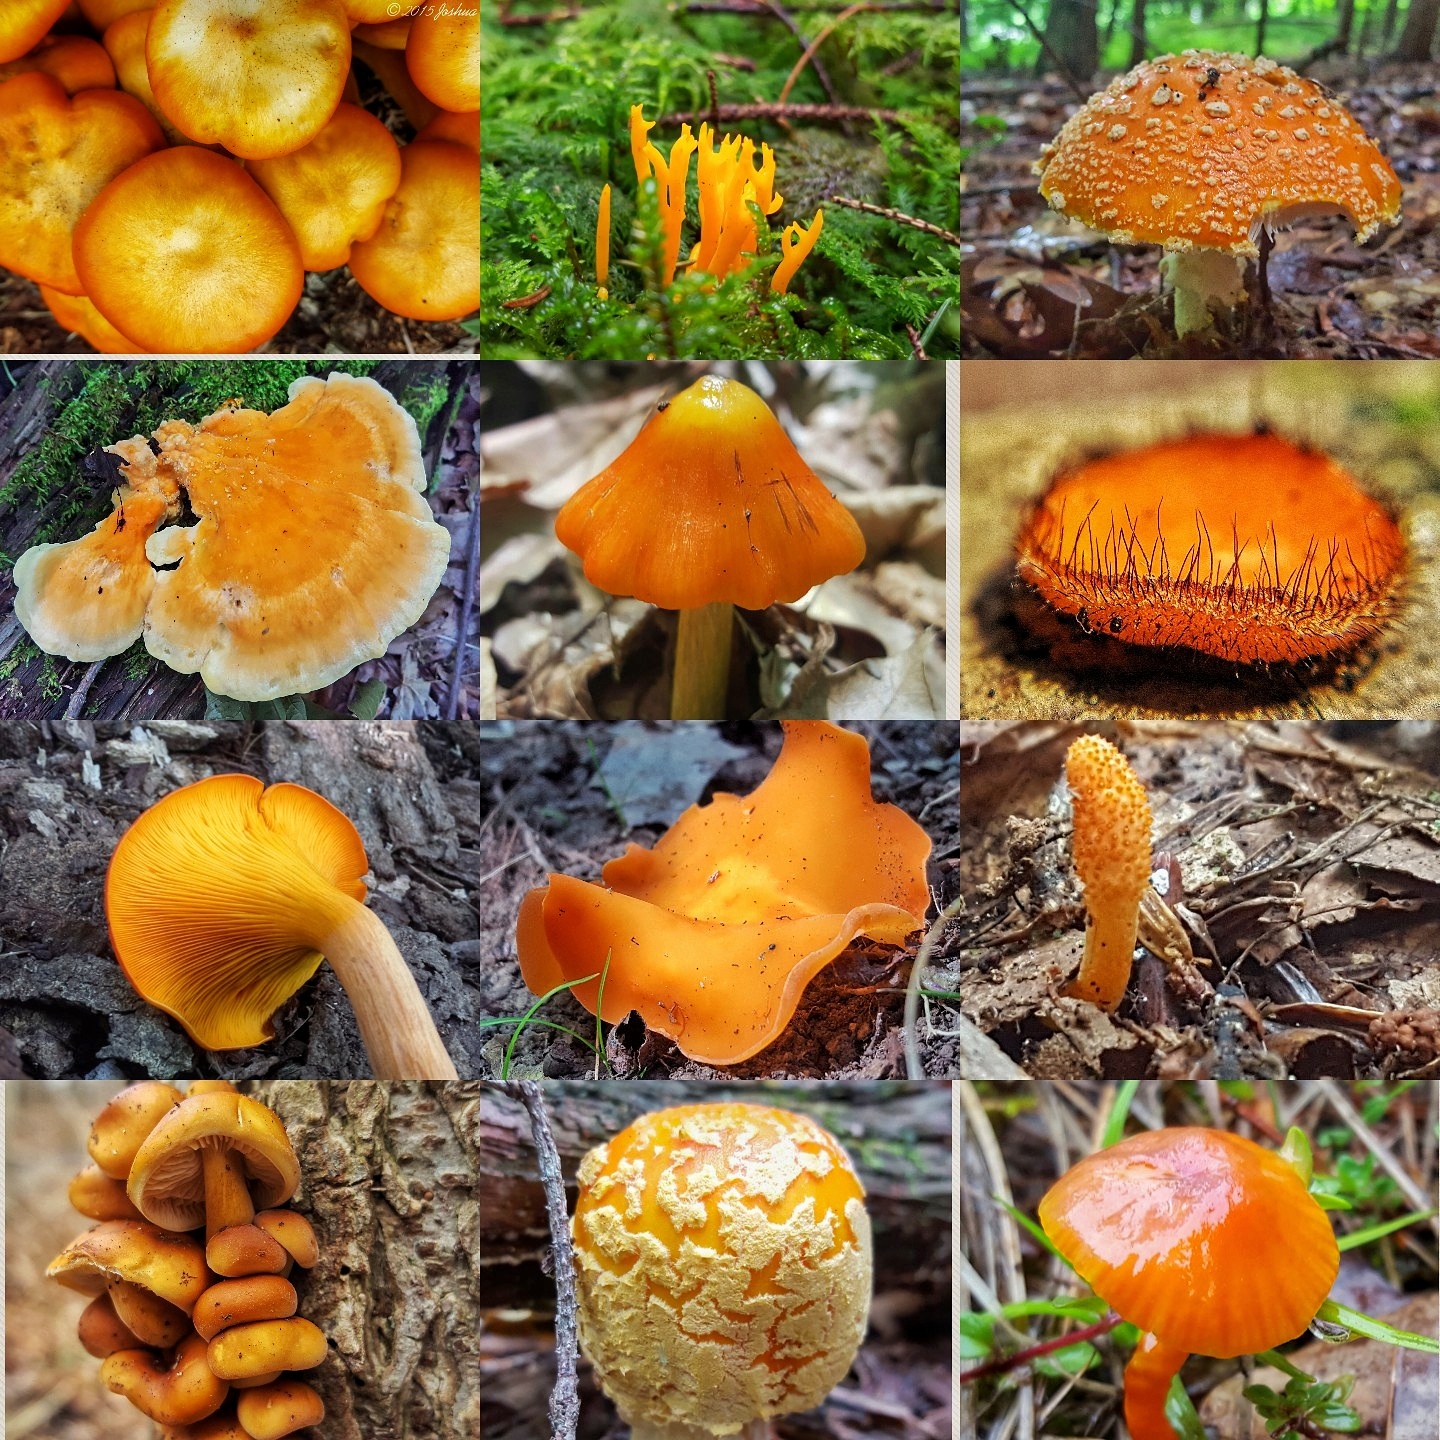 72 Colorful Mushroom Photos | Josh Doty's 